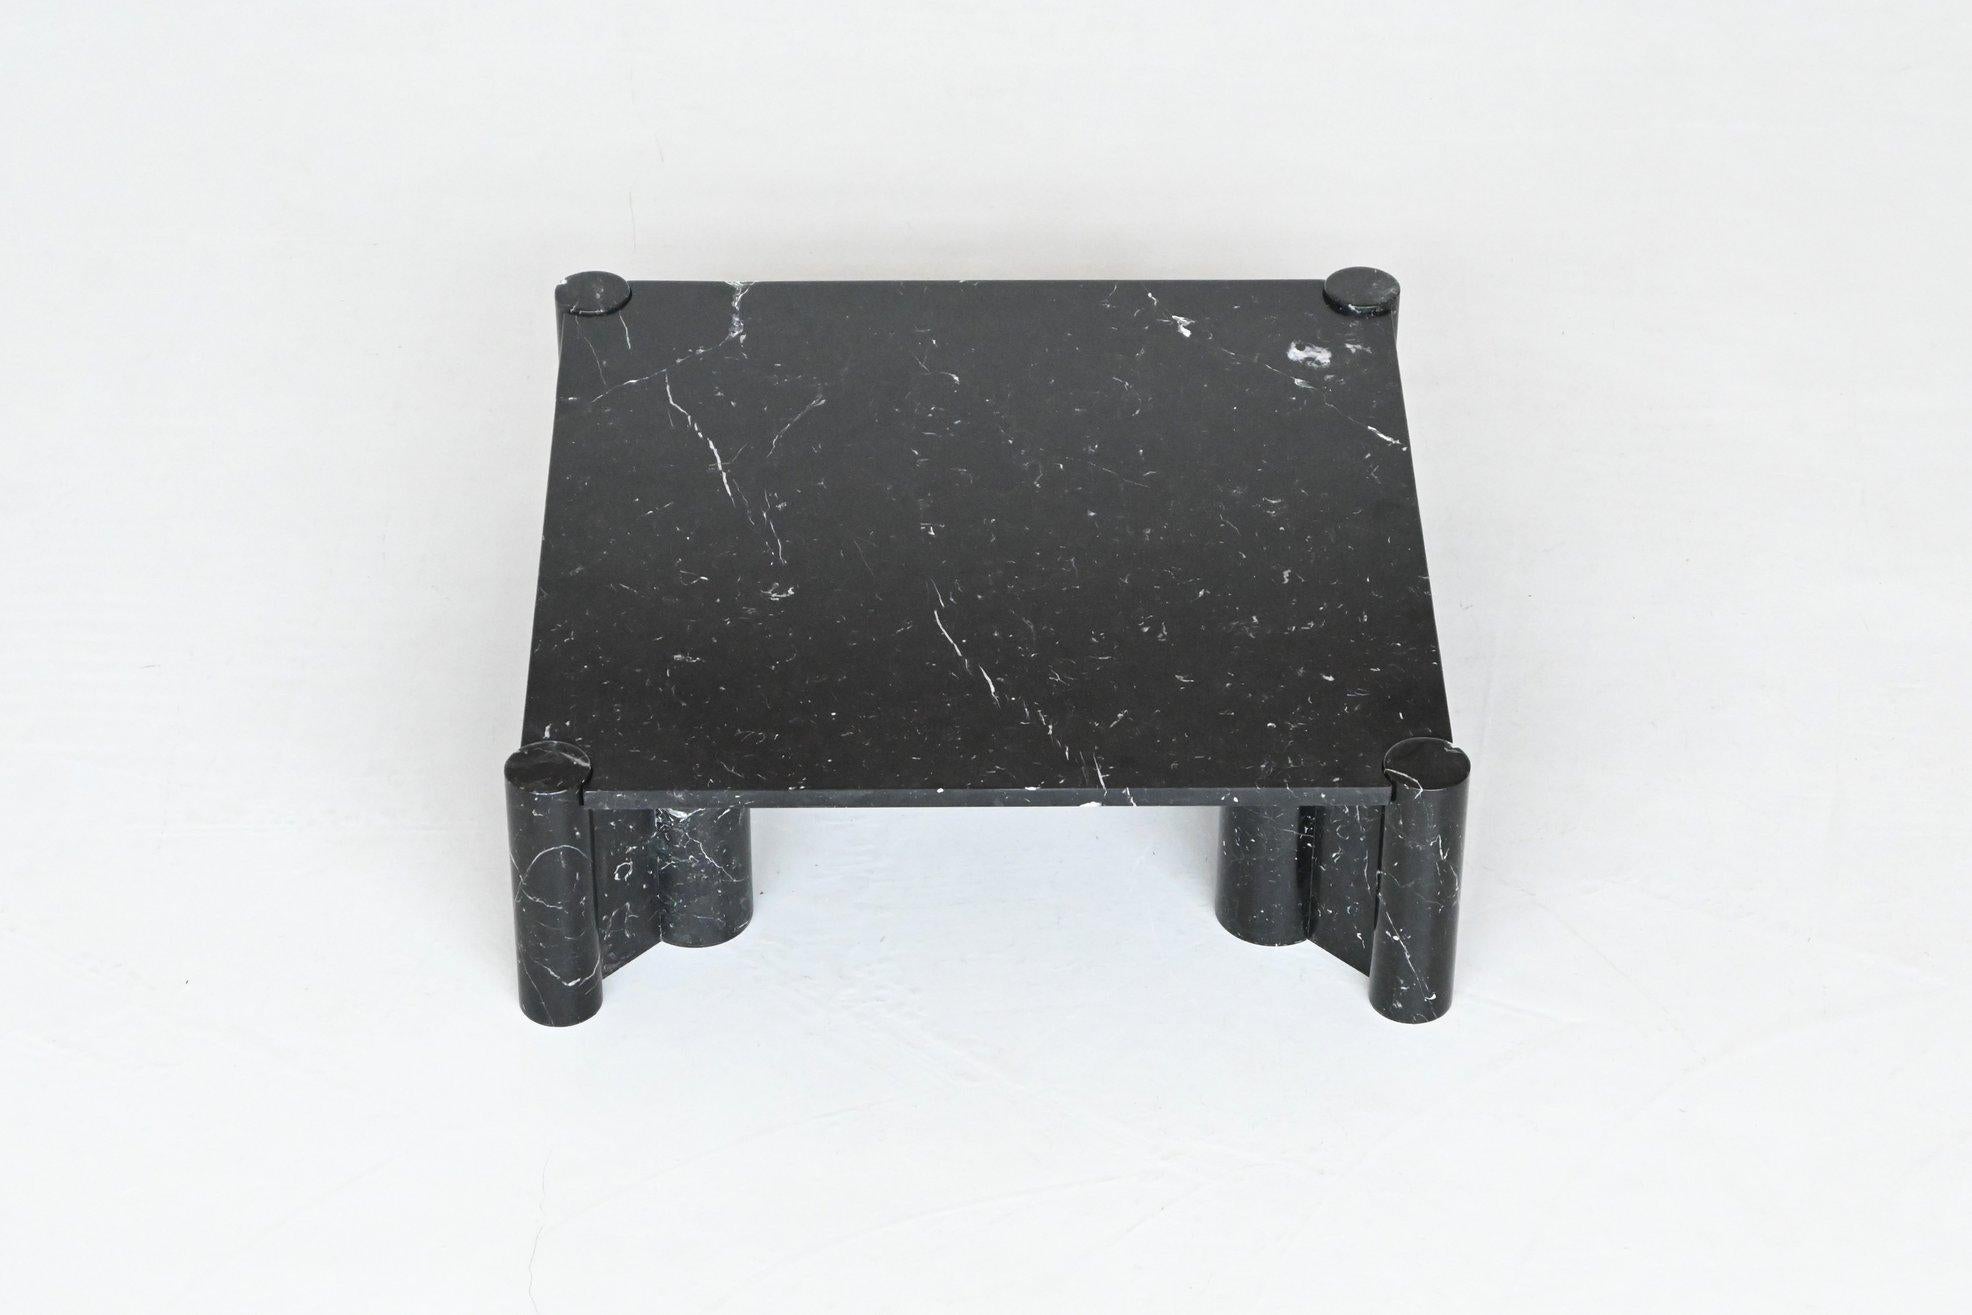 Italian Gae Aulenti Jumbo coffee table black marble Knoll International Italy 1965 For Sale